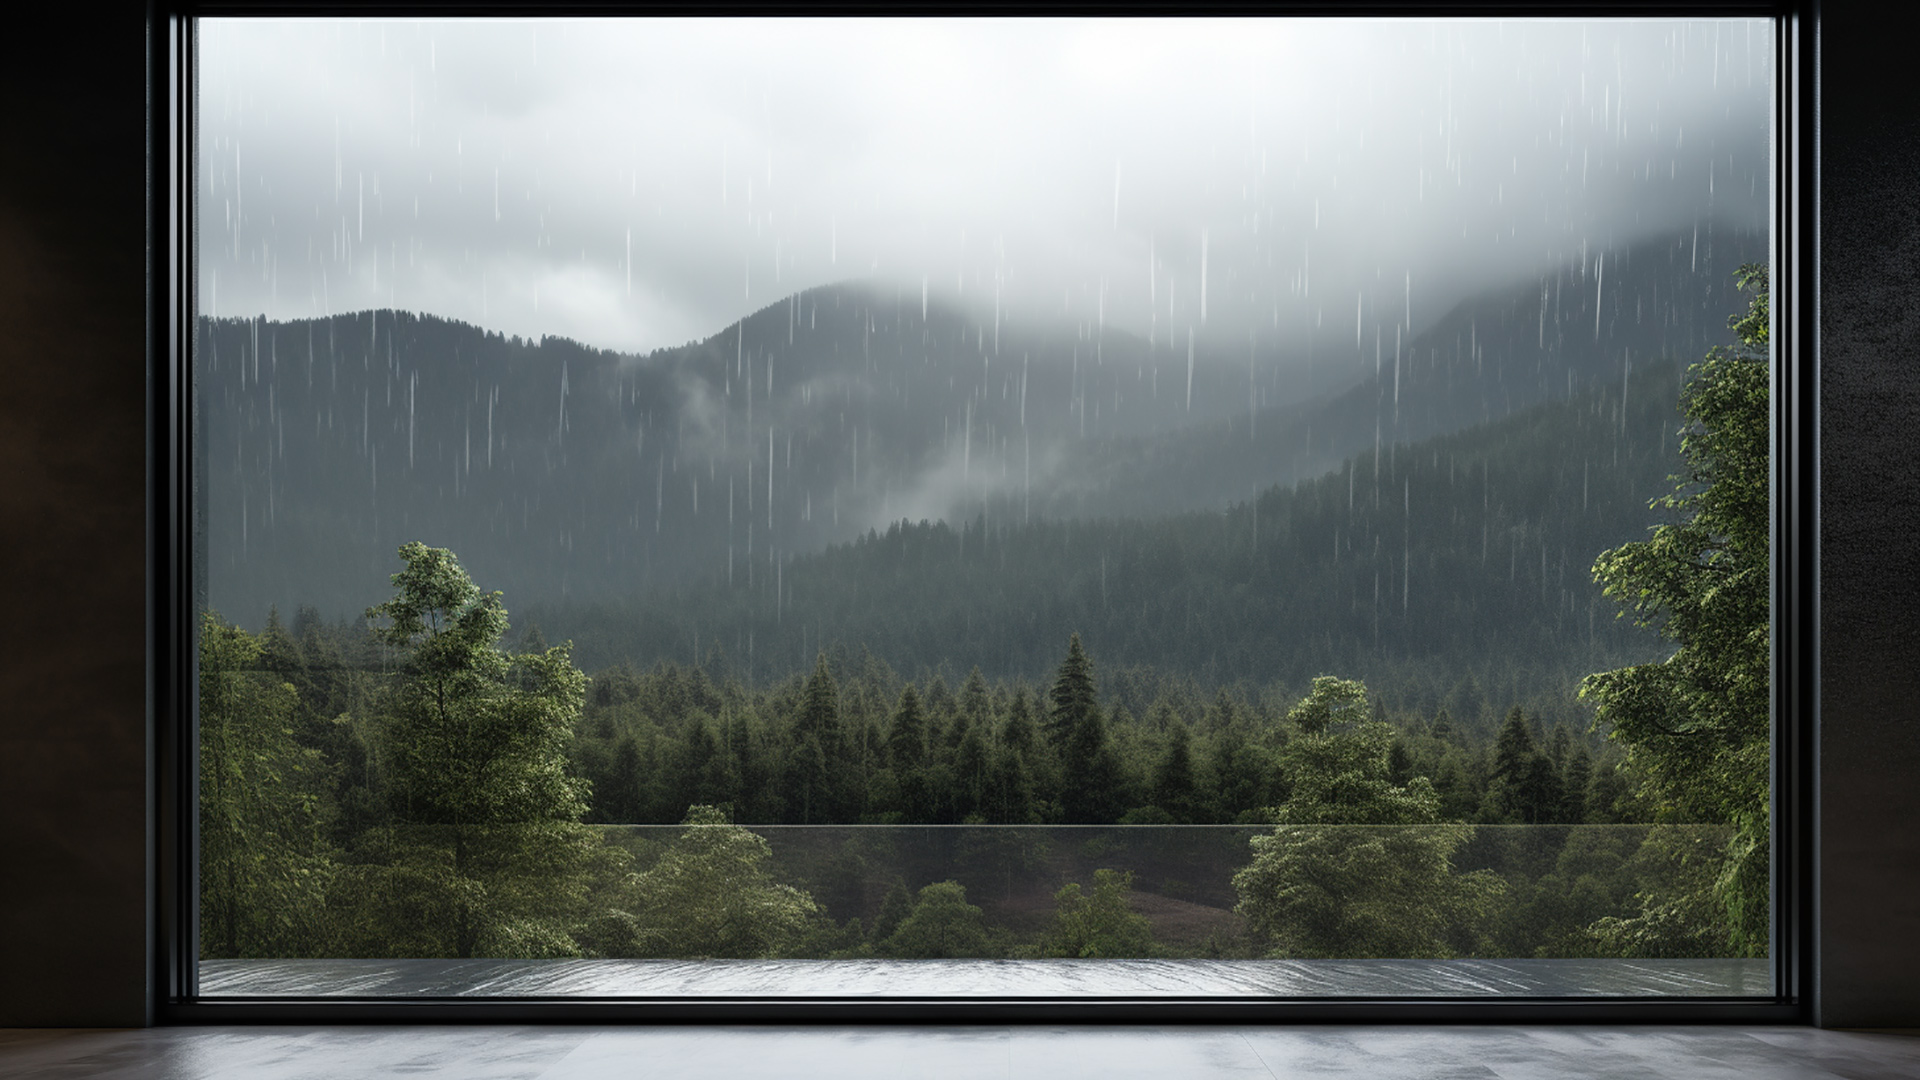 Elegant rainy window scenes to enhance desktop aesthetic